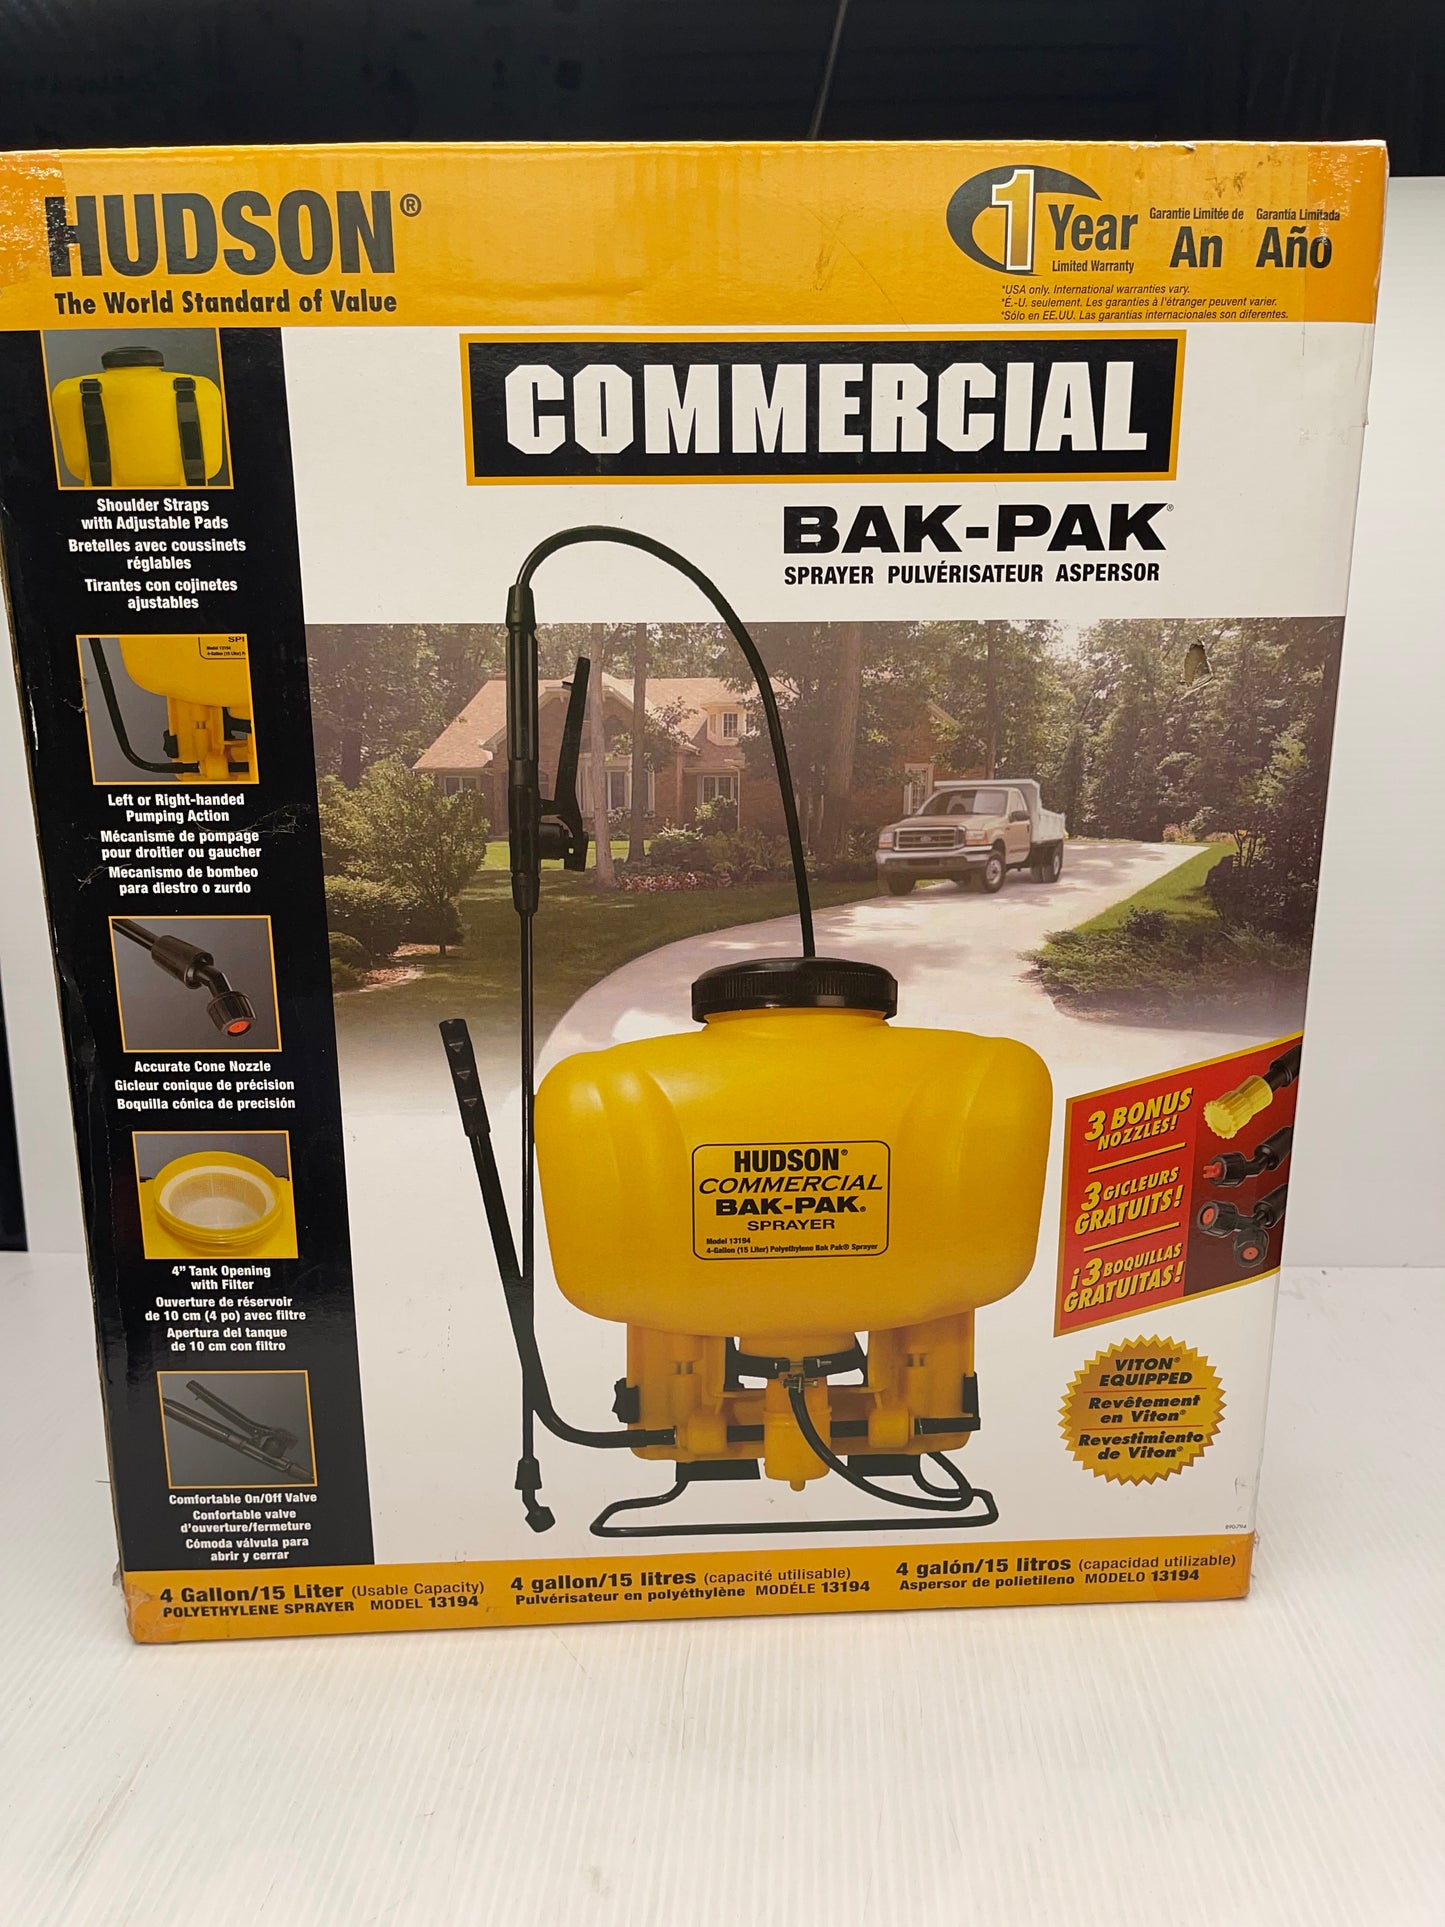 Hudson Commercial Bak-Pak Sprayer